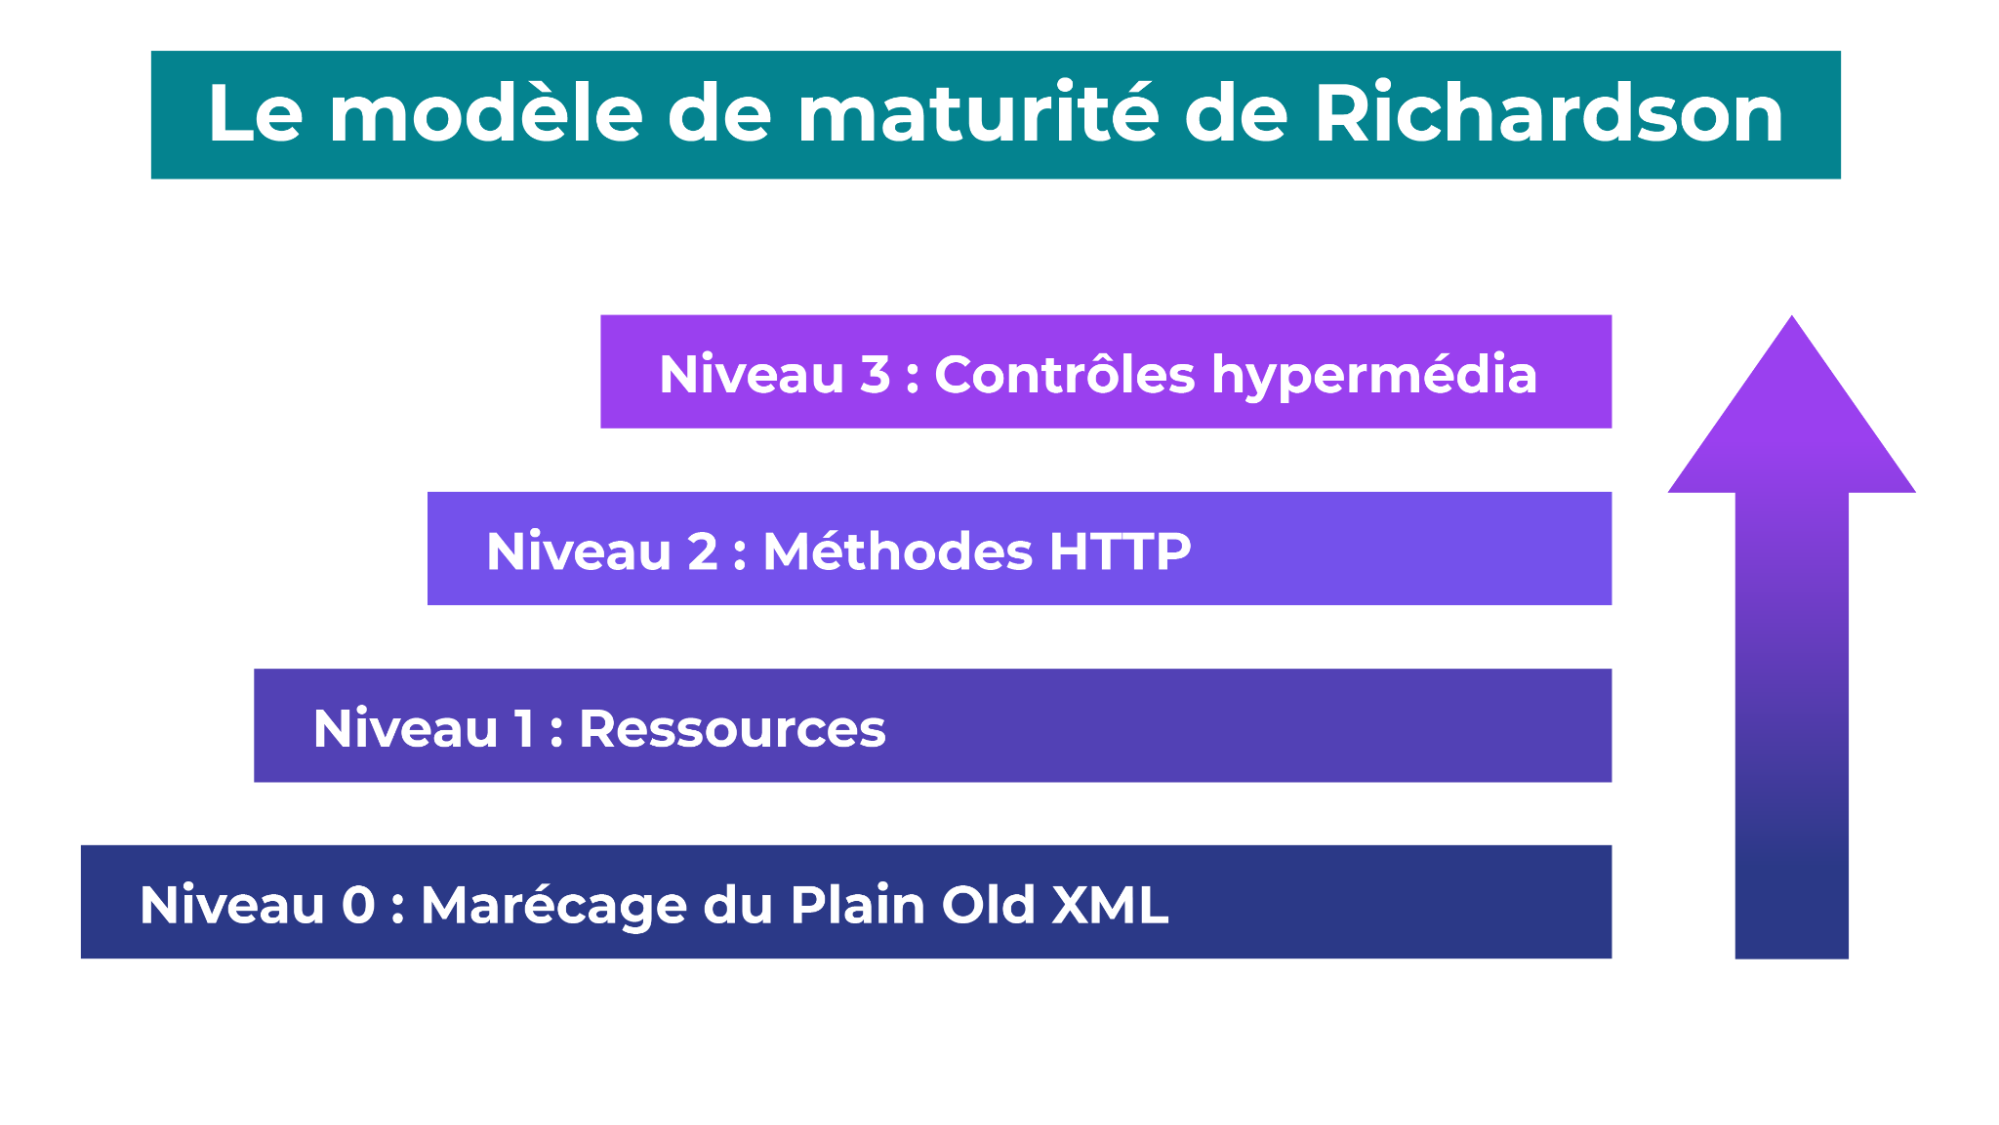 Les 4 niveaux : 0, Marécage du Plain Old XML ; 1, Ressources ; 2, Méthodes HTTP ; 3, Contrôles hypermédia.